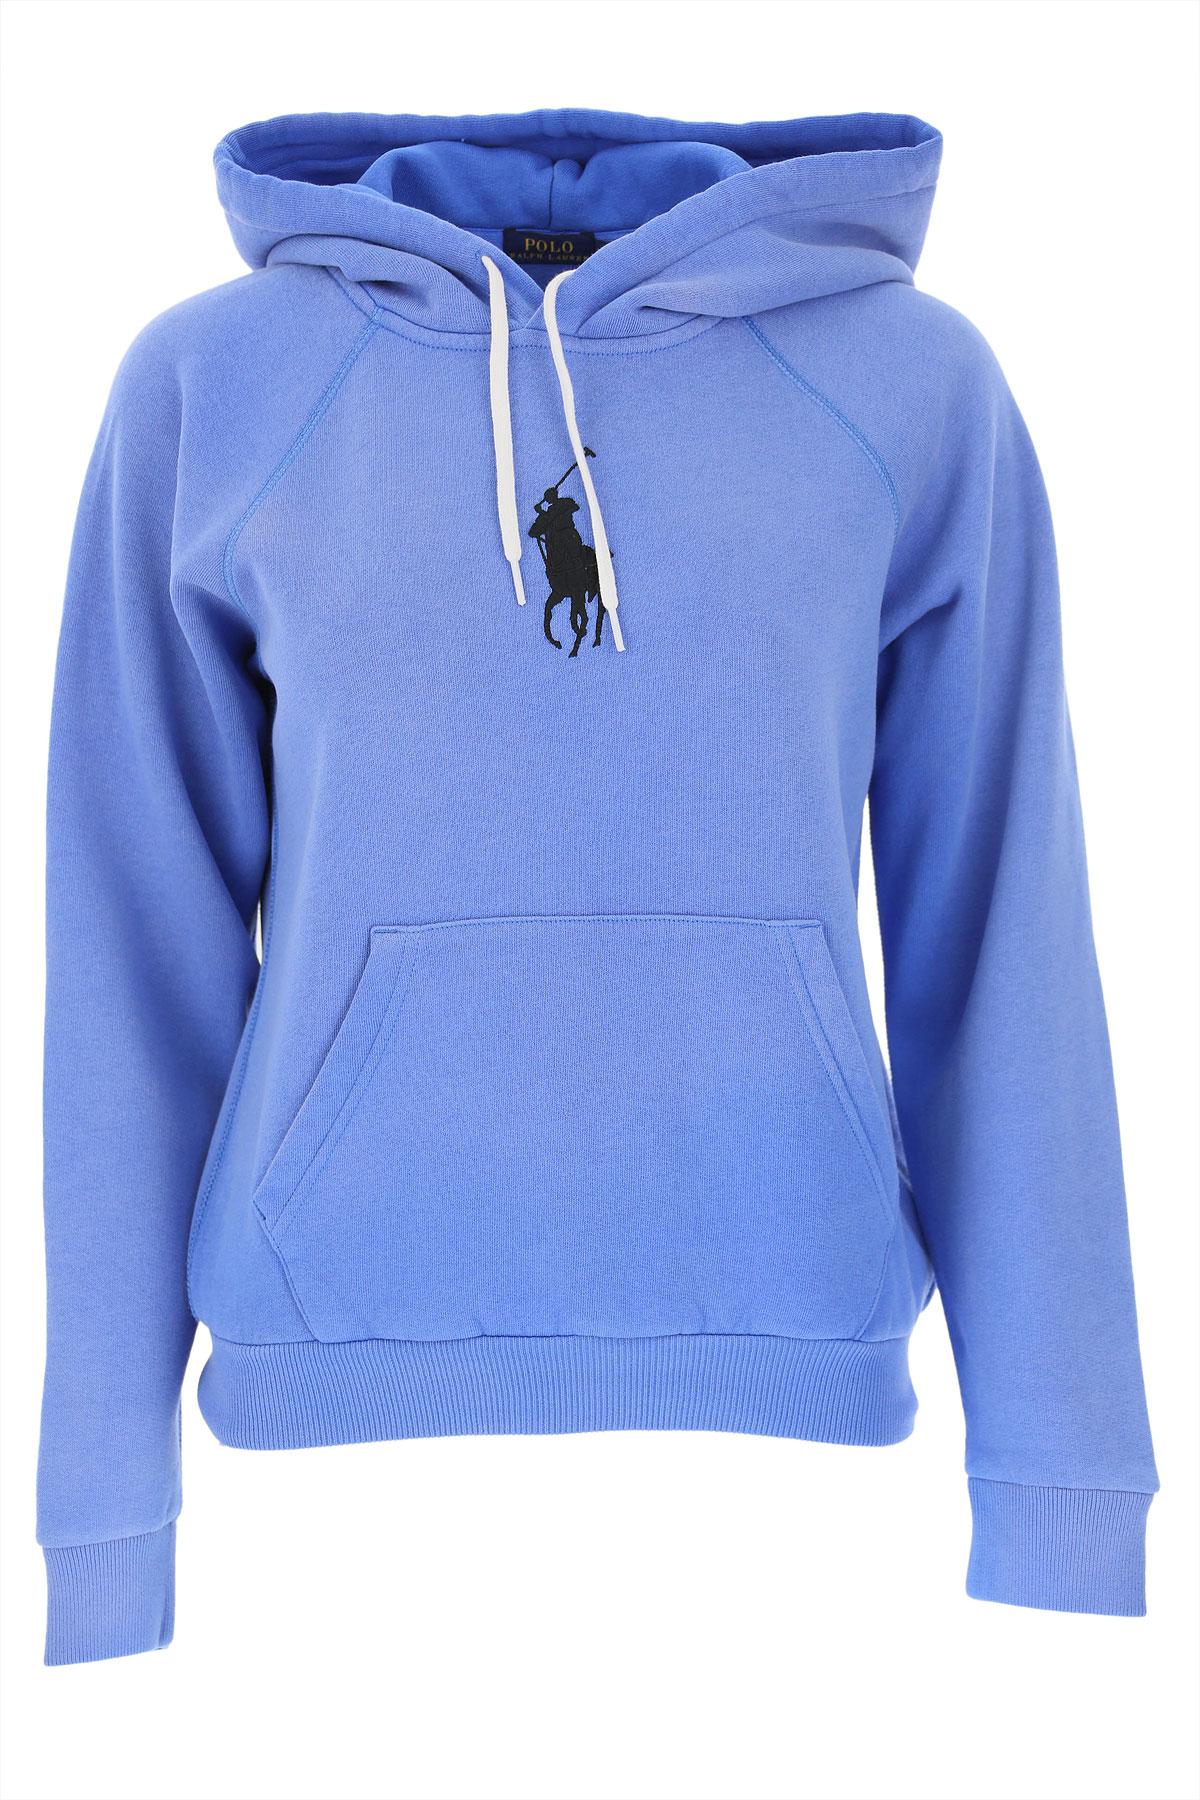 ralph lauren hoodie womens sale